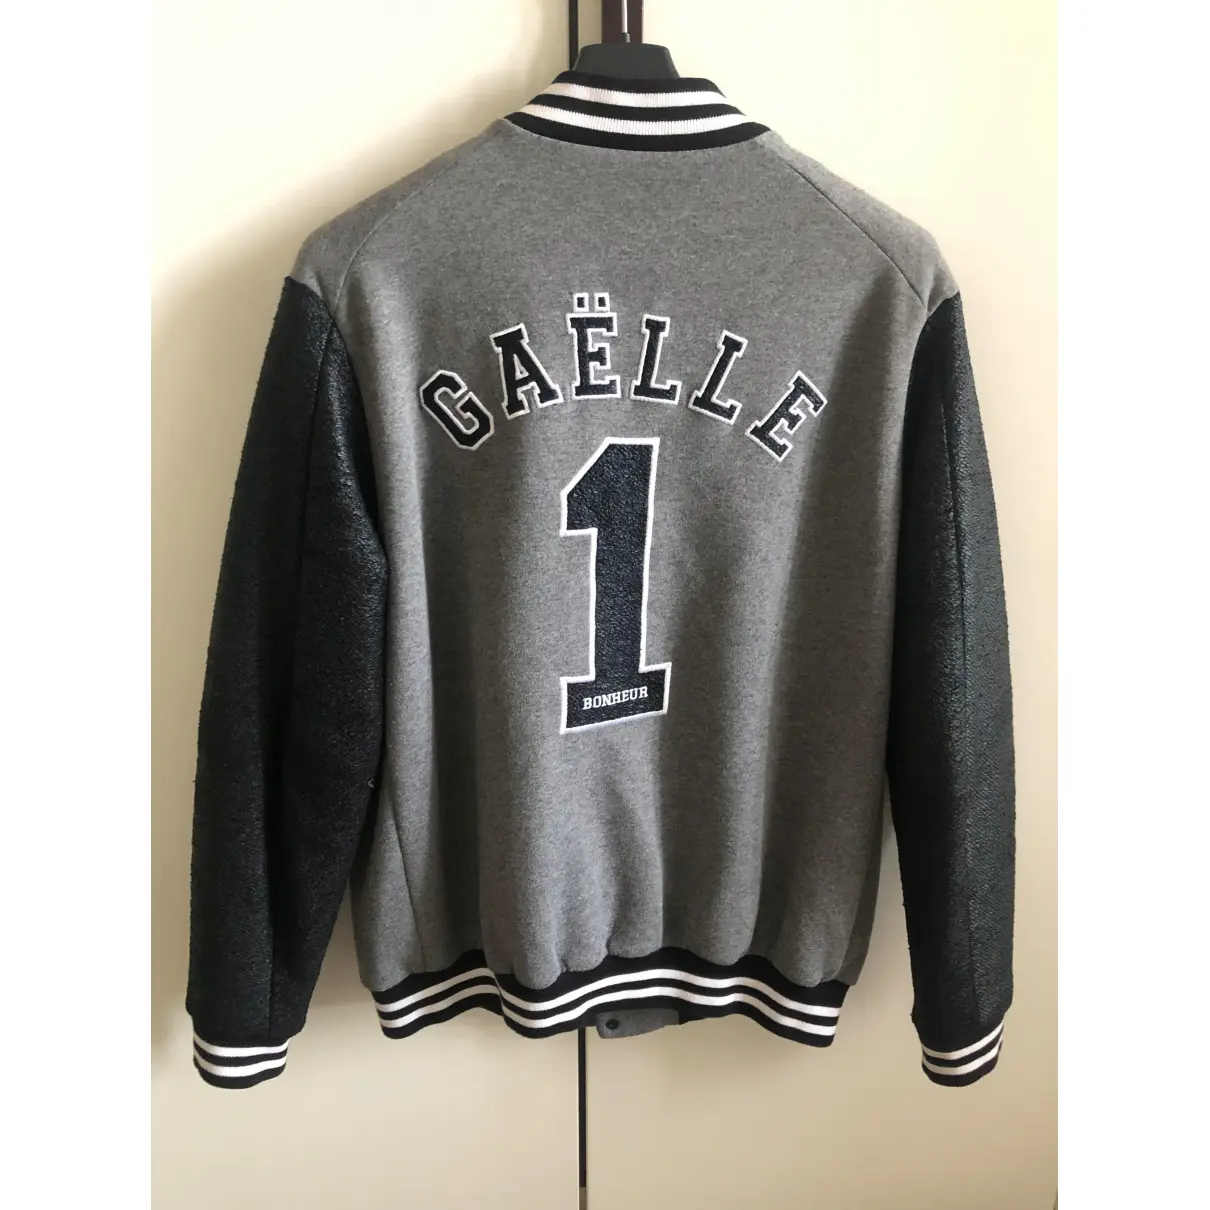 Buy Gaelle Bonheur Jacket online